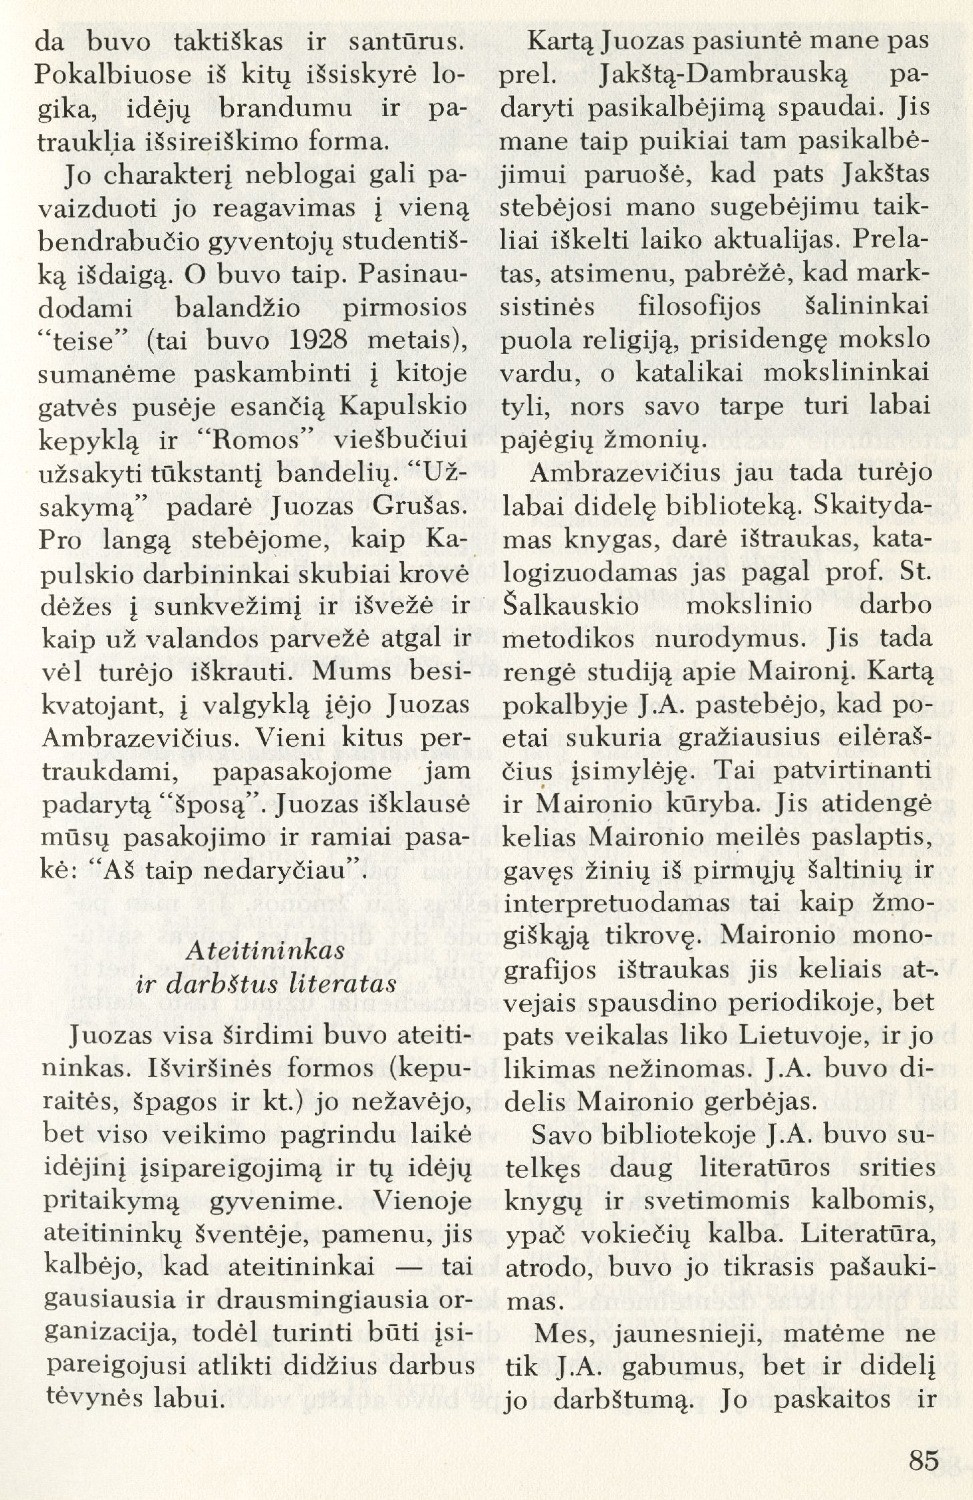 Esi herojus, tapk šventuoju: studentiški prisiminimai apie Juozą Ambrazevičių-Brazaitį / Vincas Kazlauskas // Į laisvę. – 1975, Nr. 65, p. 84–87, 96.